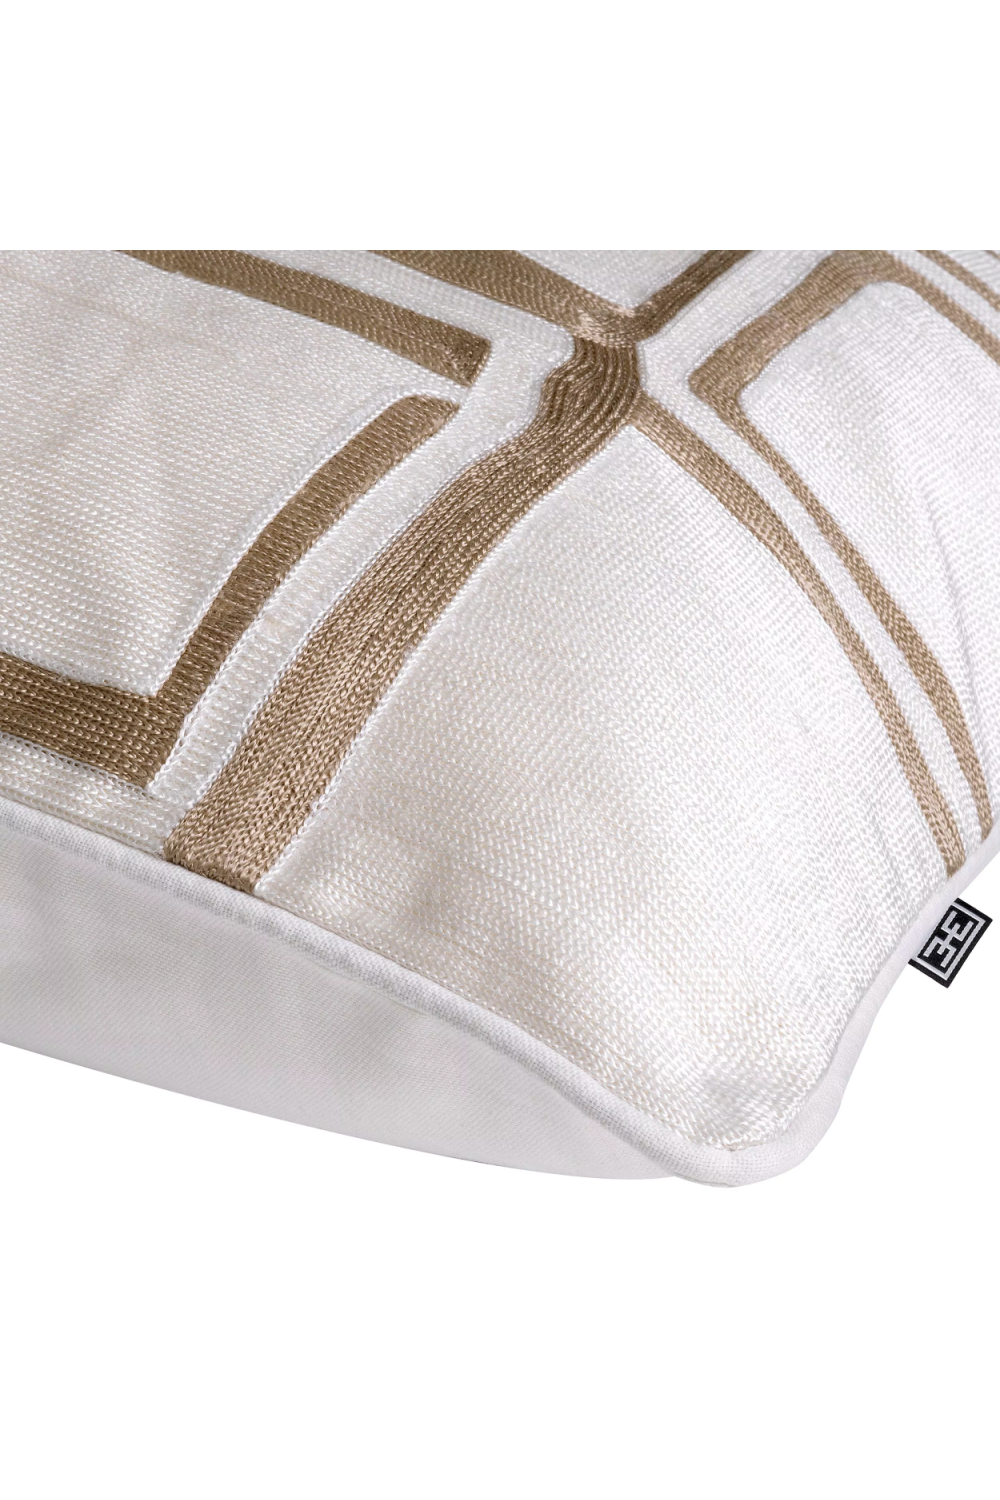 Viscose Contemporary Patterned Cushion | Eichholtz Ribeira | Oroa.com